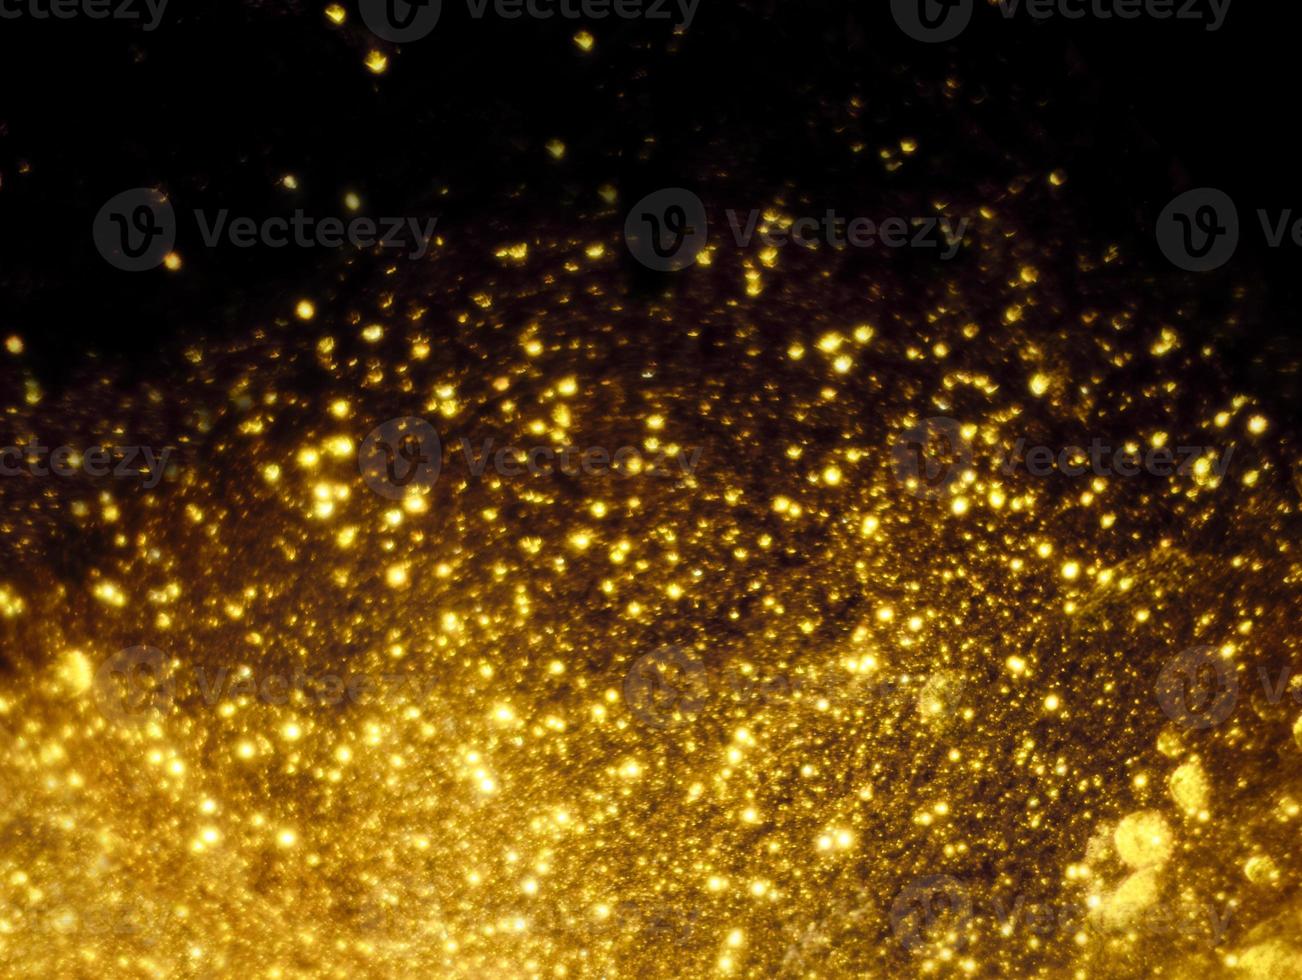 gyllene glitter bokeh belysning textur suddig abstrakt bakgrund för födelsedag, årsdag, bröllop, nyårsafton eller jul foto